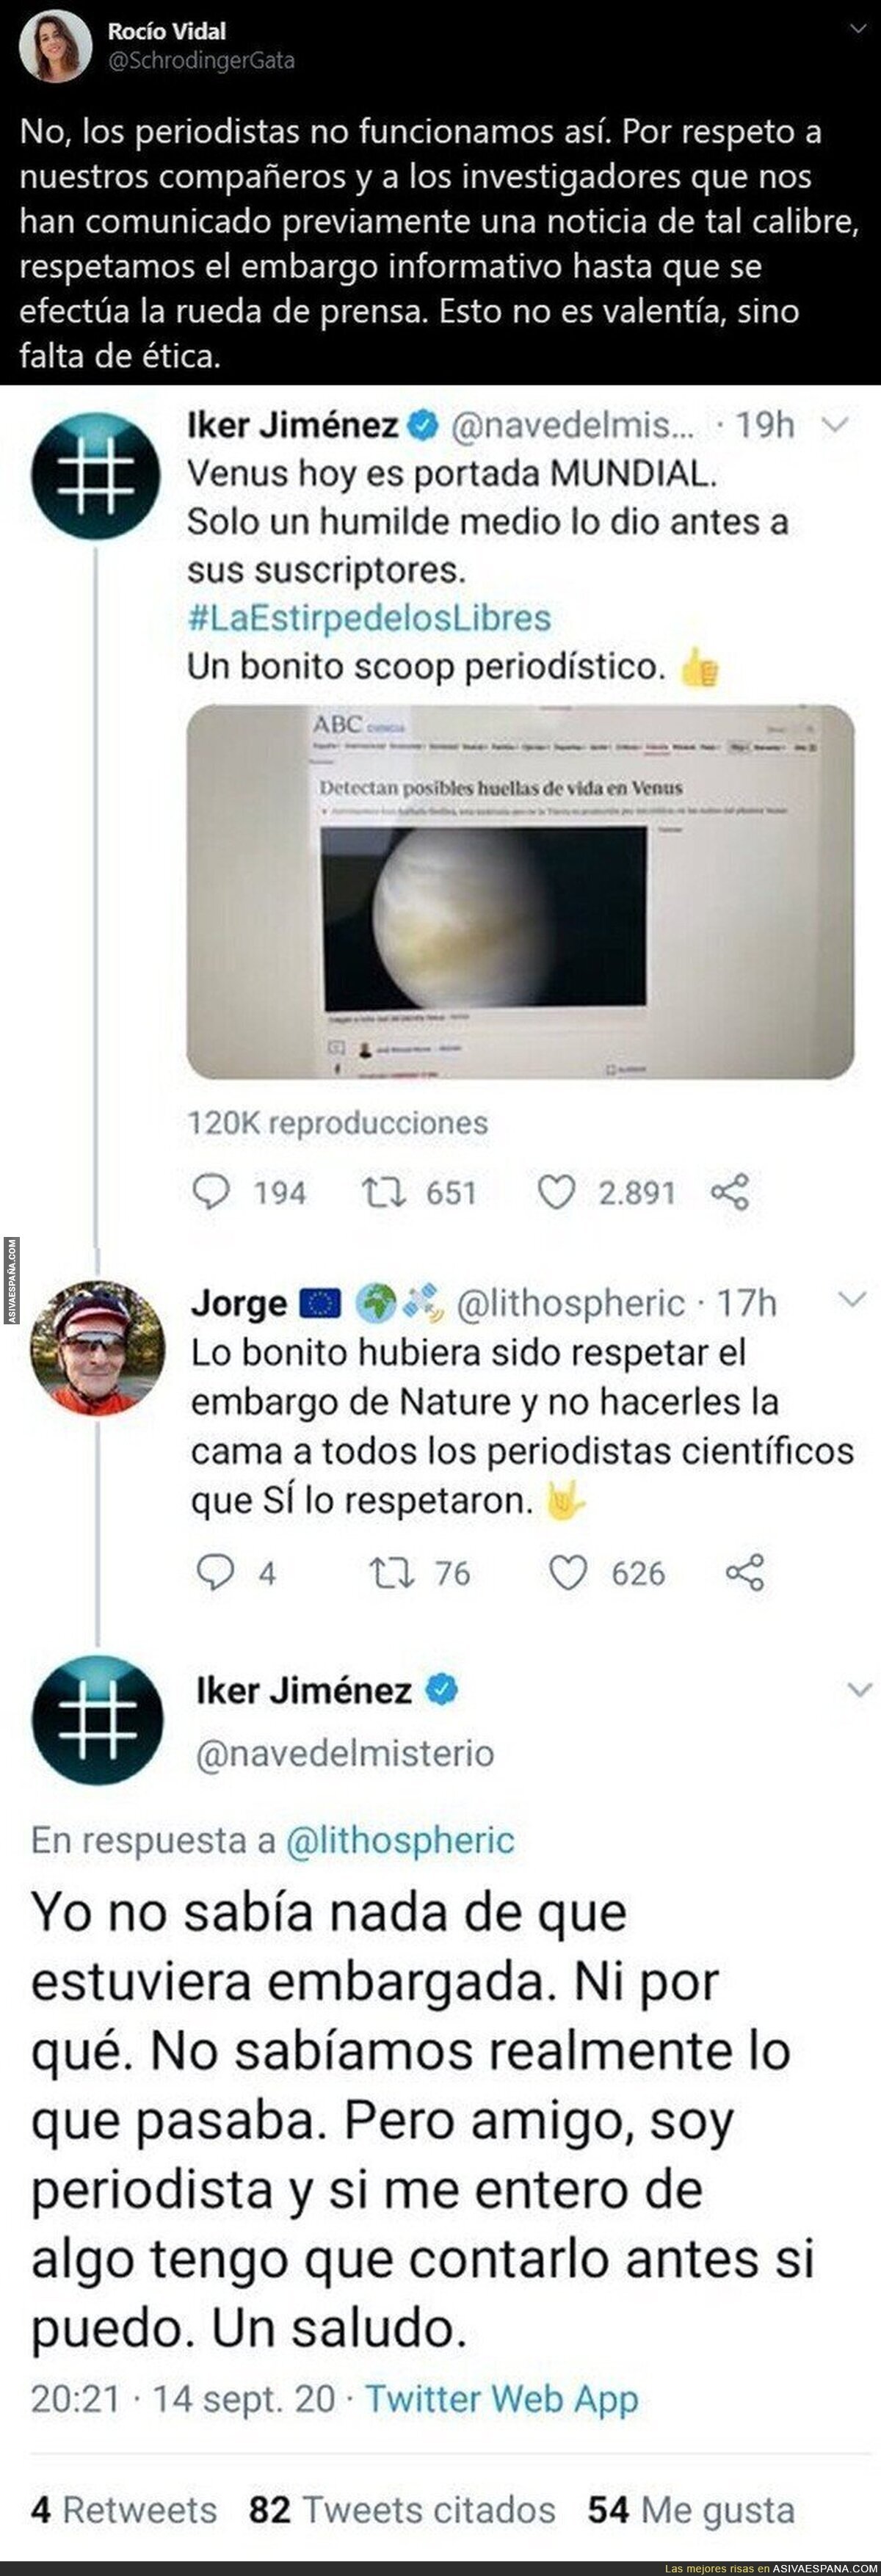 La cerdada que ha hecho Iker Jiménez hablando antes de tiempo sobre la noticia de Venus